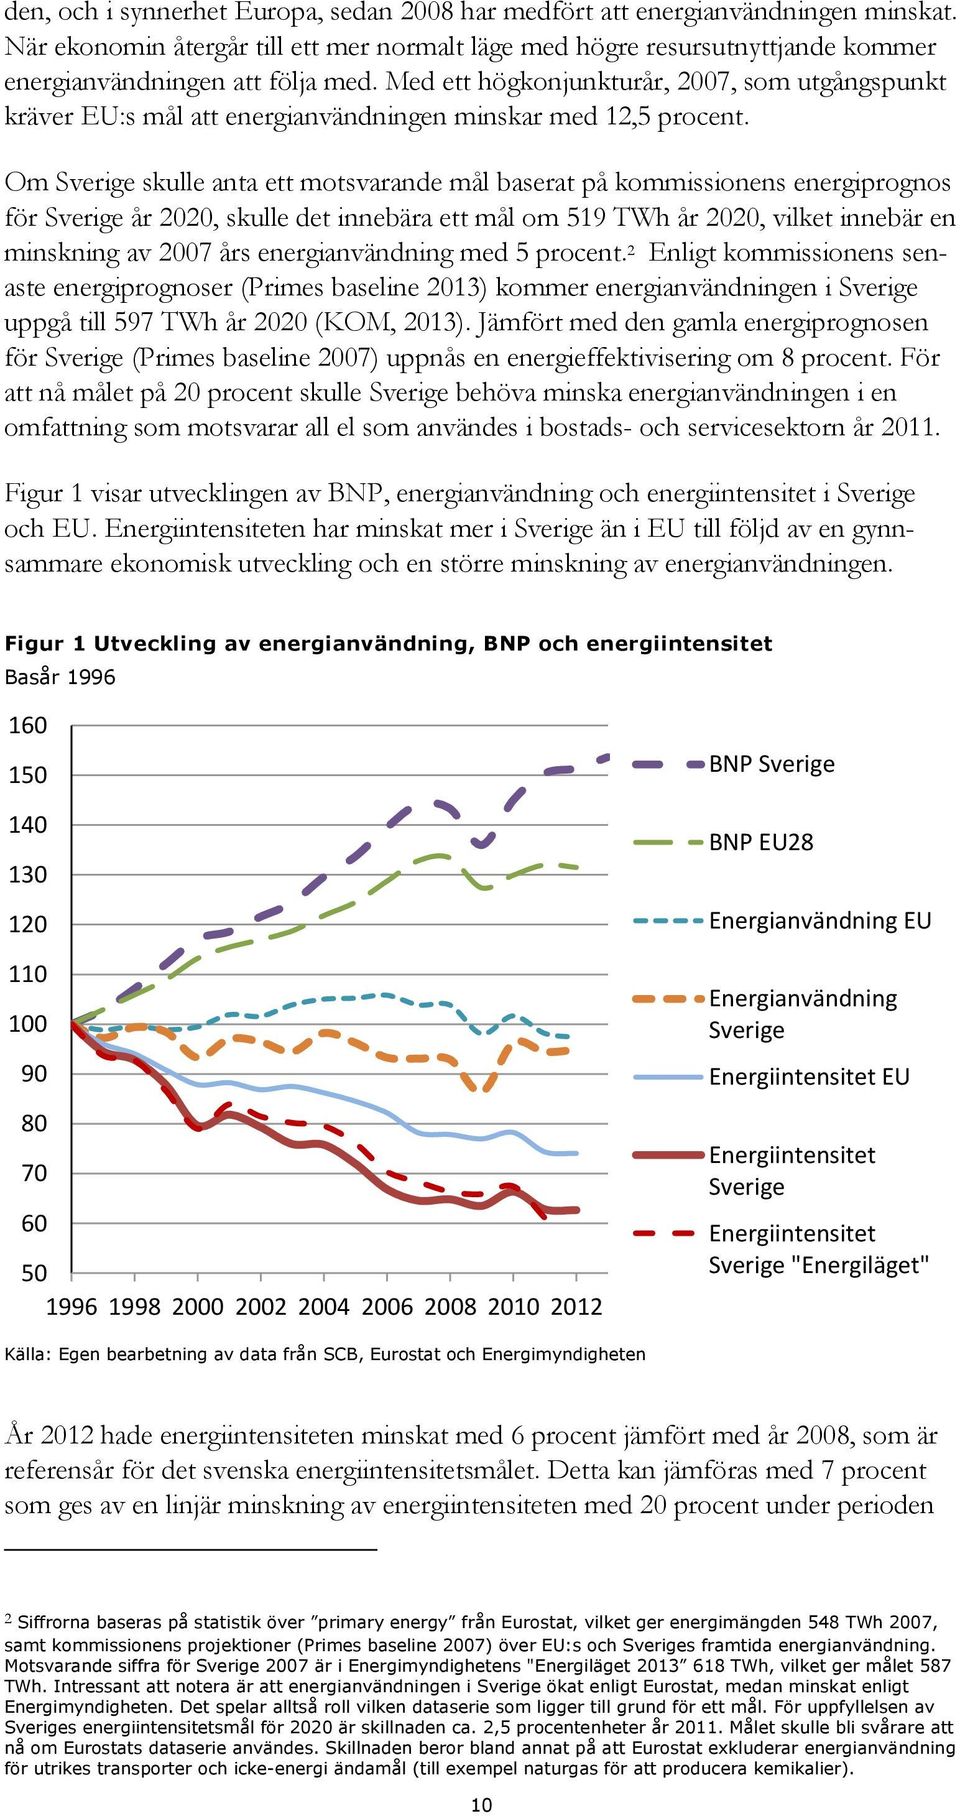 Om Sverige skulle anta ett motsvarande mål baserat på kommissionens energiprognos för Sverige år 2020, skulle det innebära ett mål om 519 TWh år 2020, vilket innebär en minskning av 2007 års